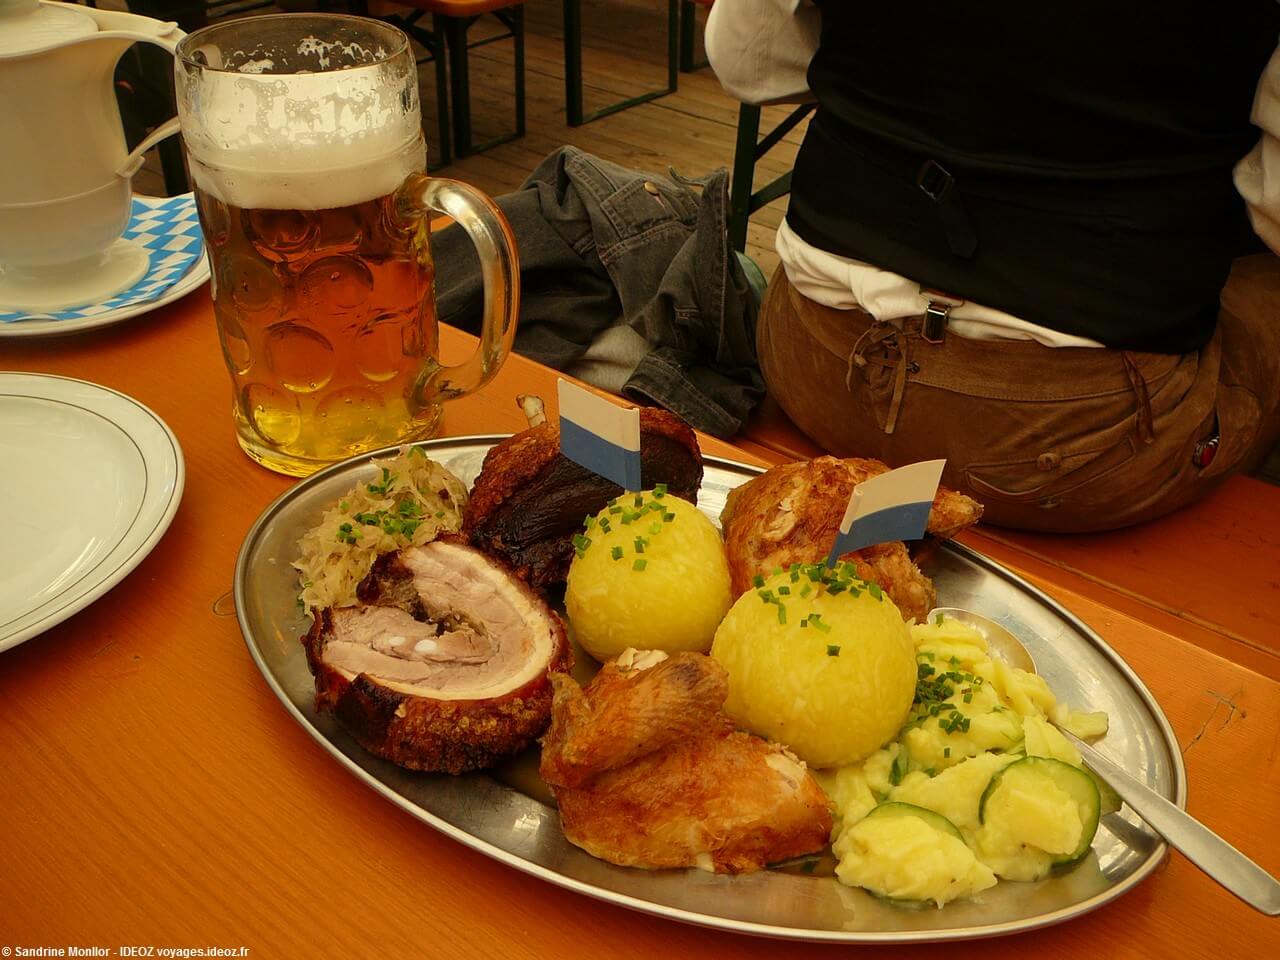 Plat familial de la fête de la bière de printemps à Munich